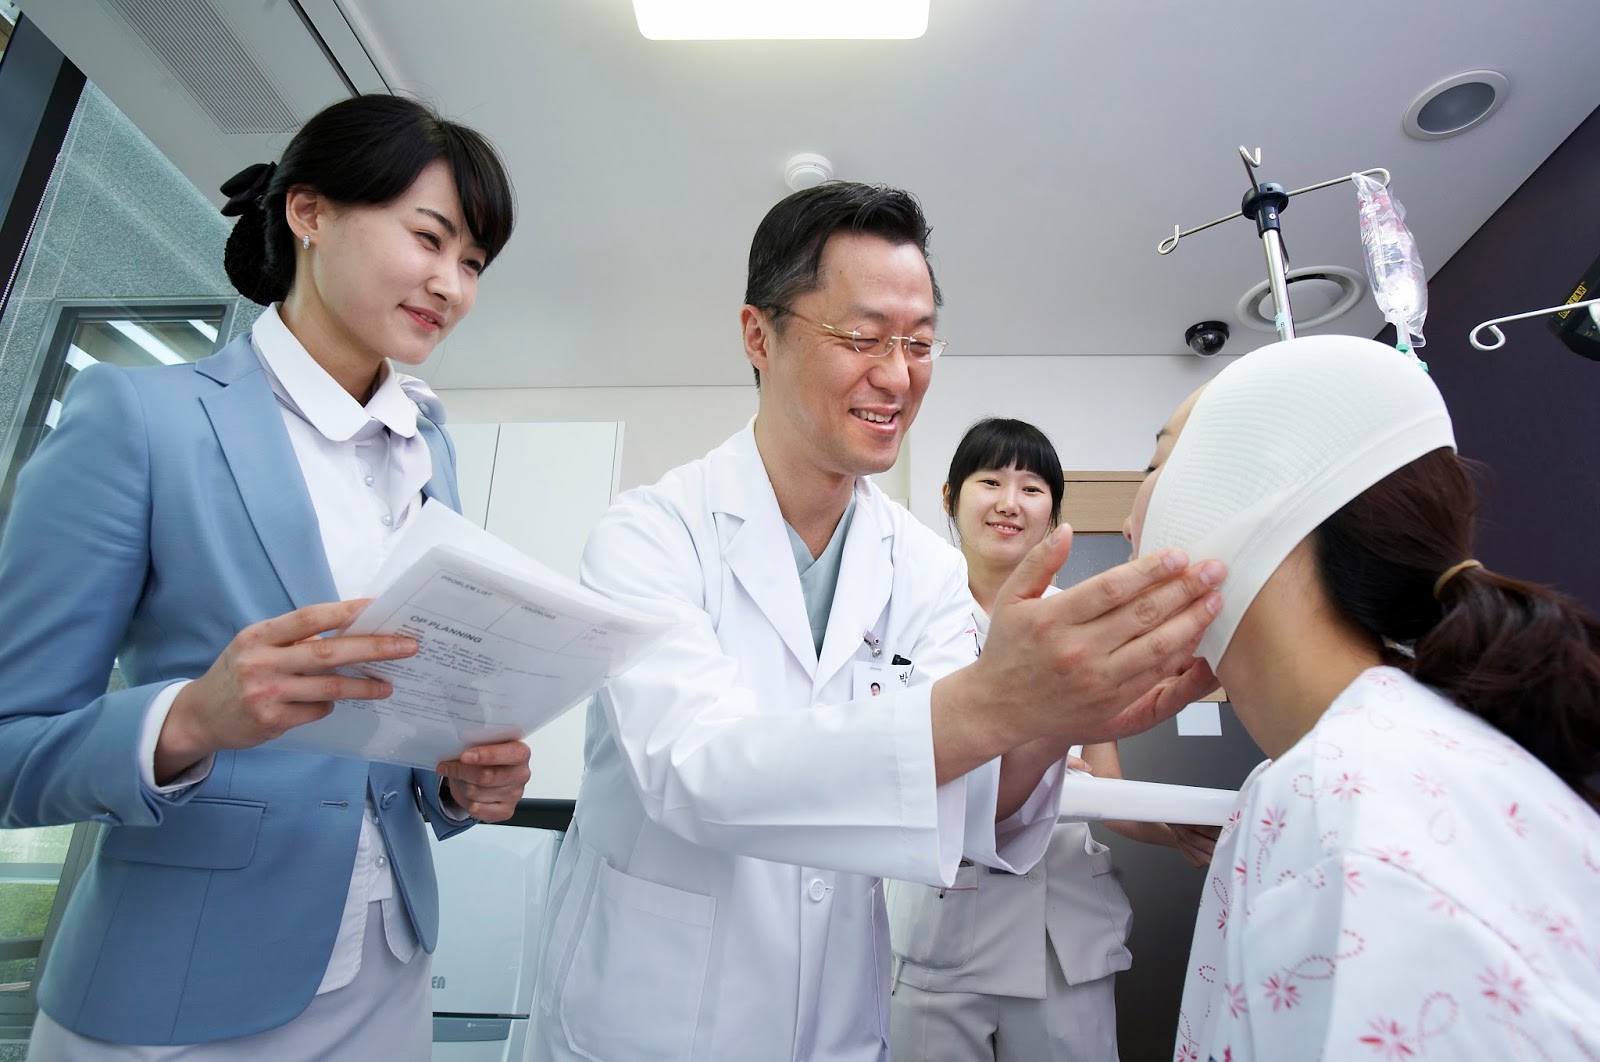 Phẫu thuật thẩm mỹ tại Hàn Quốc luôn được đánh giá cao bởi sở hữu đội ngũ bác sĩ được đào tạo bài bản, giỏi chuyên môn, giàu kinh nghiệm, thẩm mỹ theo xu hướng tự nhiên vẫn giữ lại nét vốn có của người châu Á. 